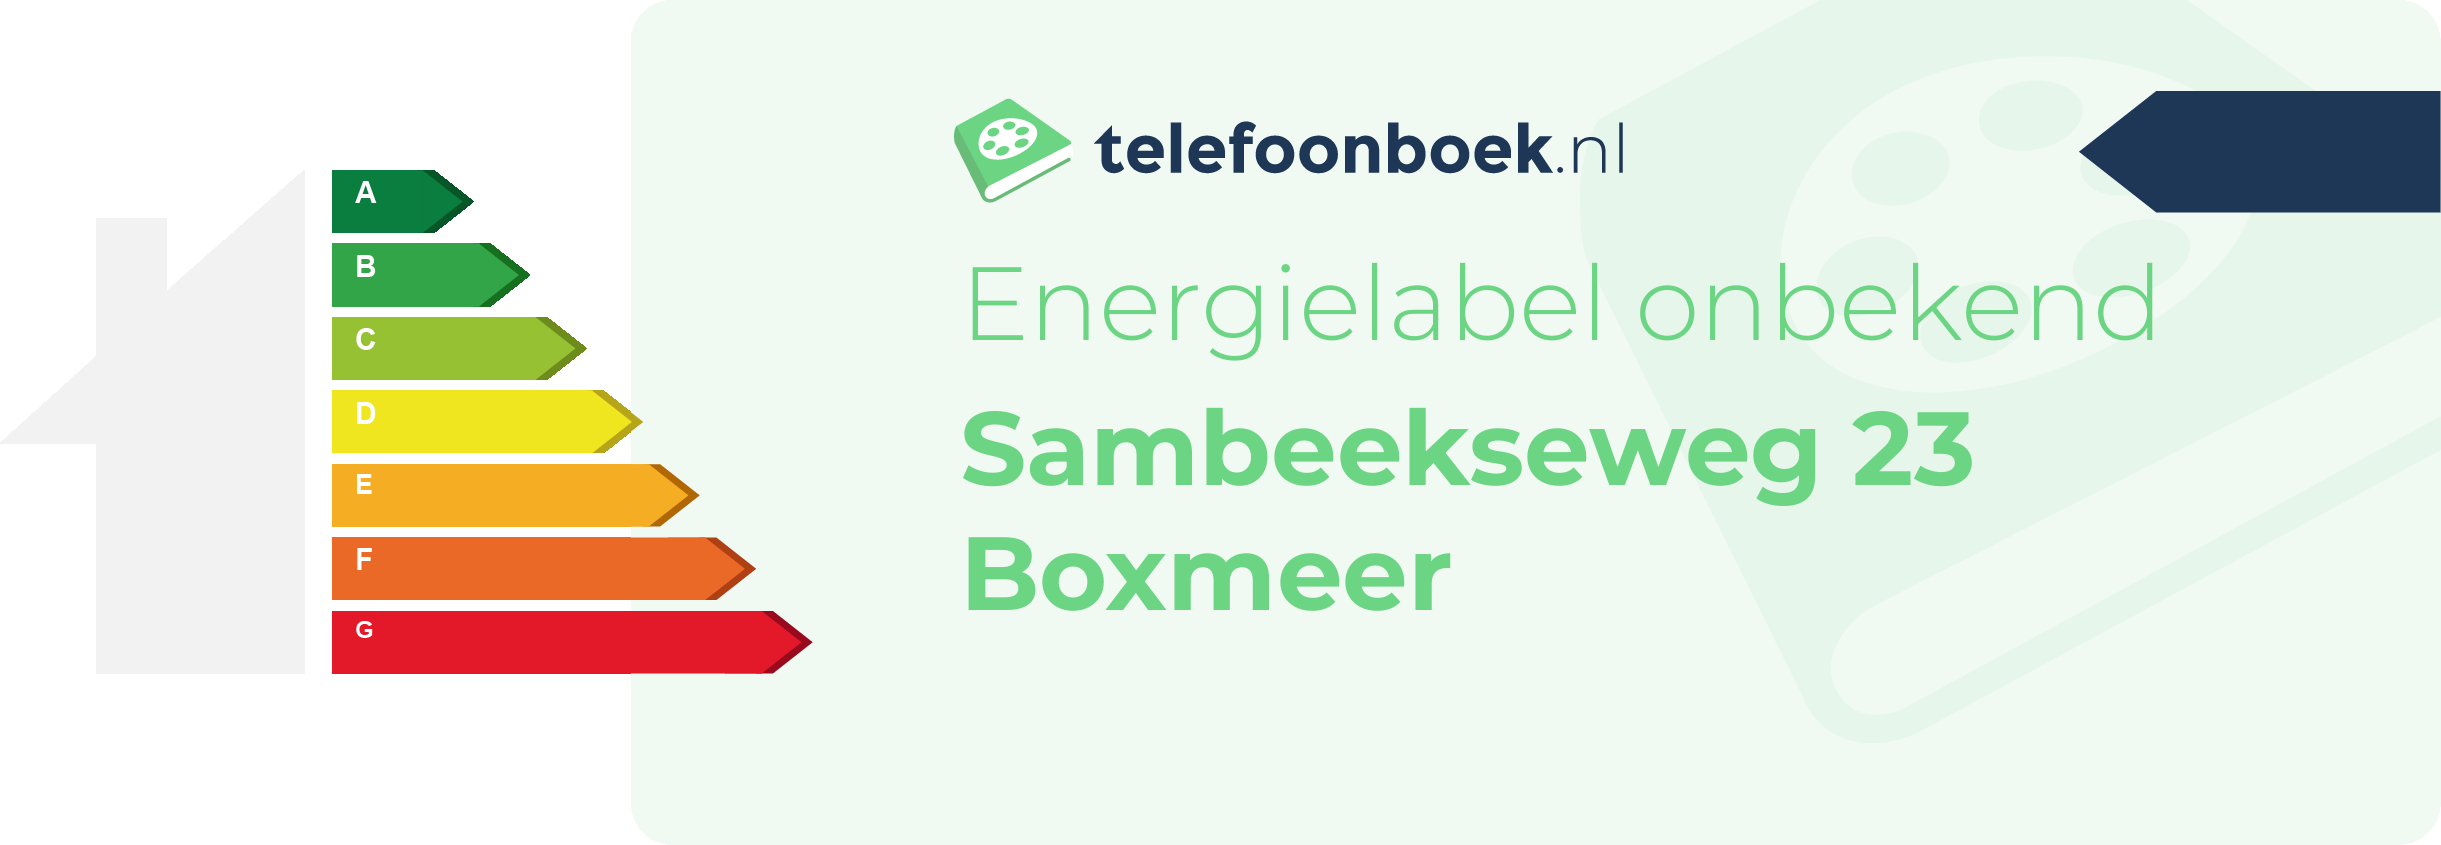 Energielabel Sambeekseweg 23 Boxmeer